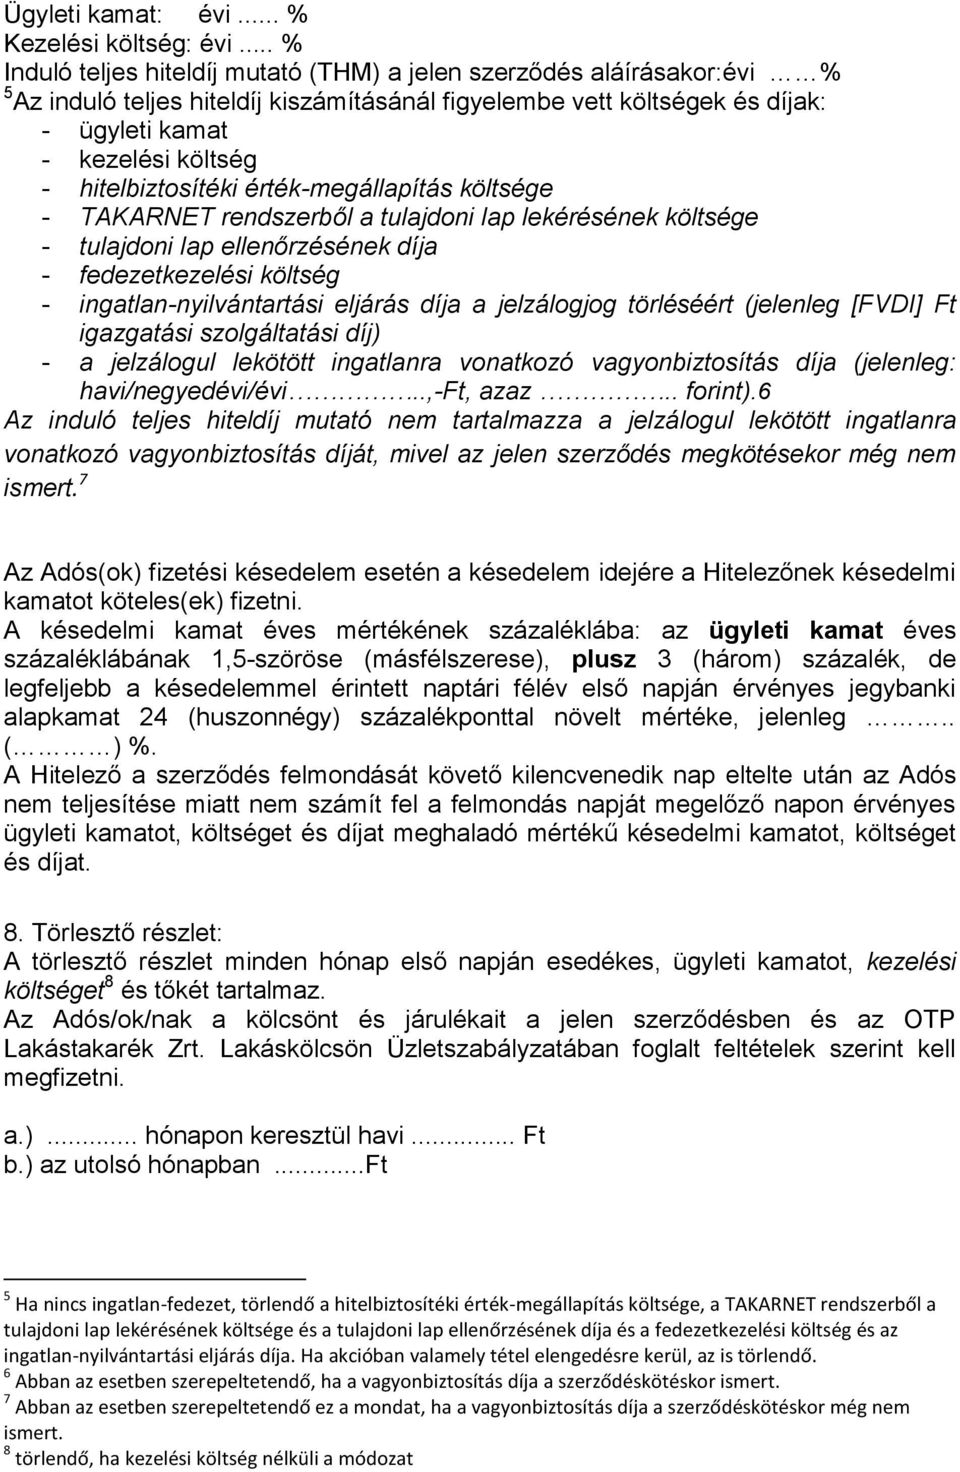 OTP Lakástakarék Zrt. annak megbízásából hitelközvetítőként eljáró OTP Bank  Nyrt. - PDF Ingyenes letöltés